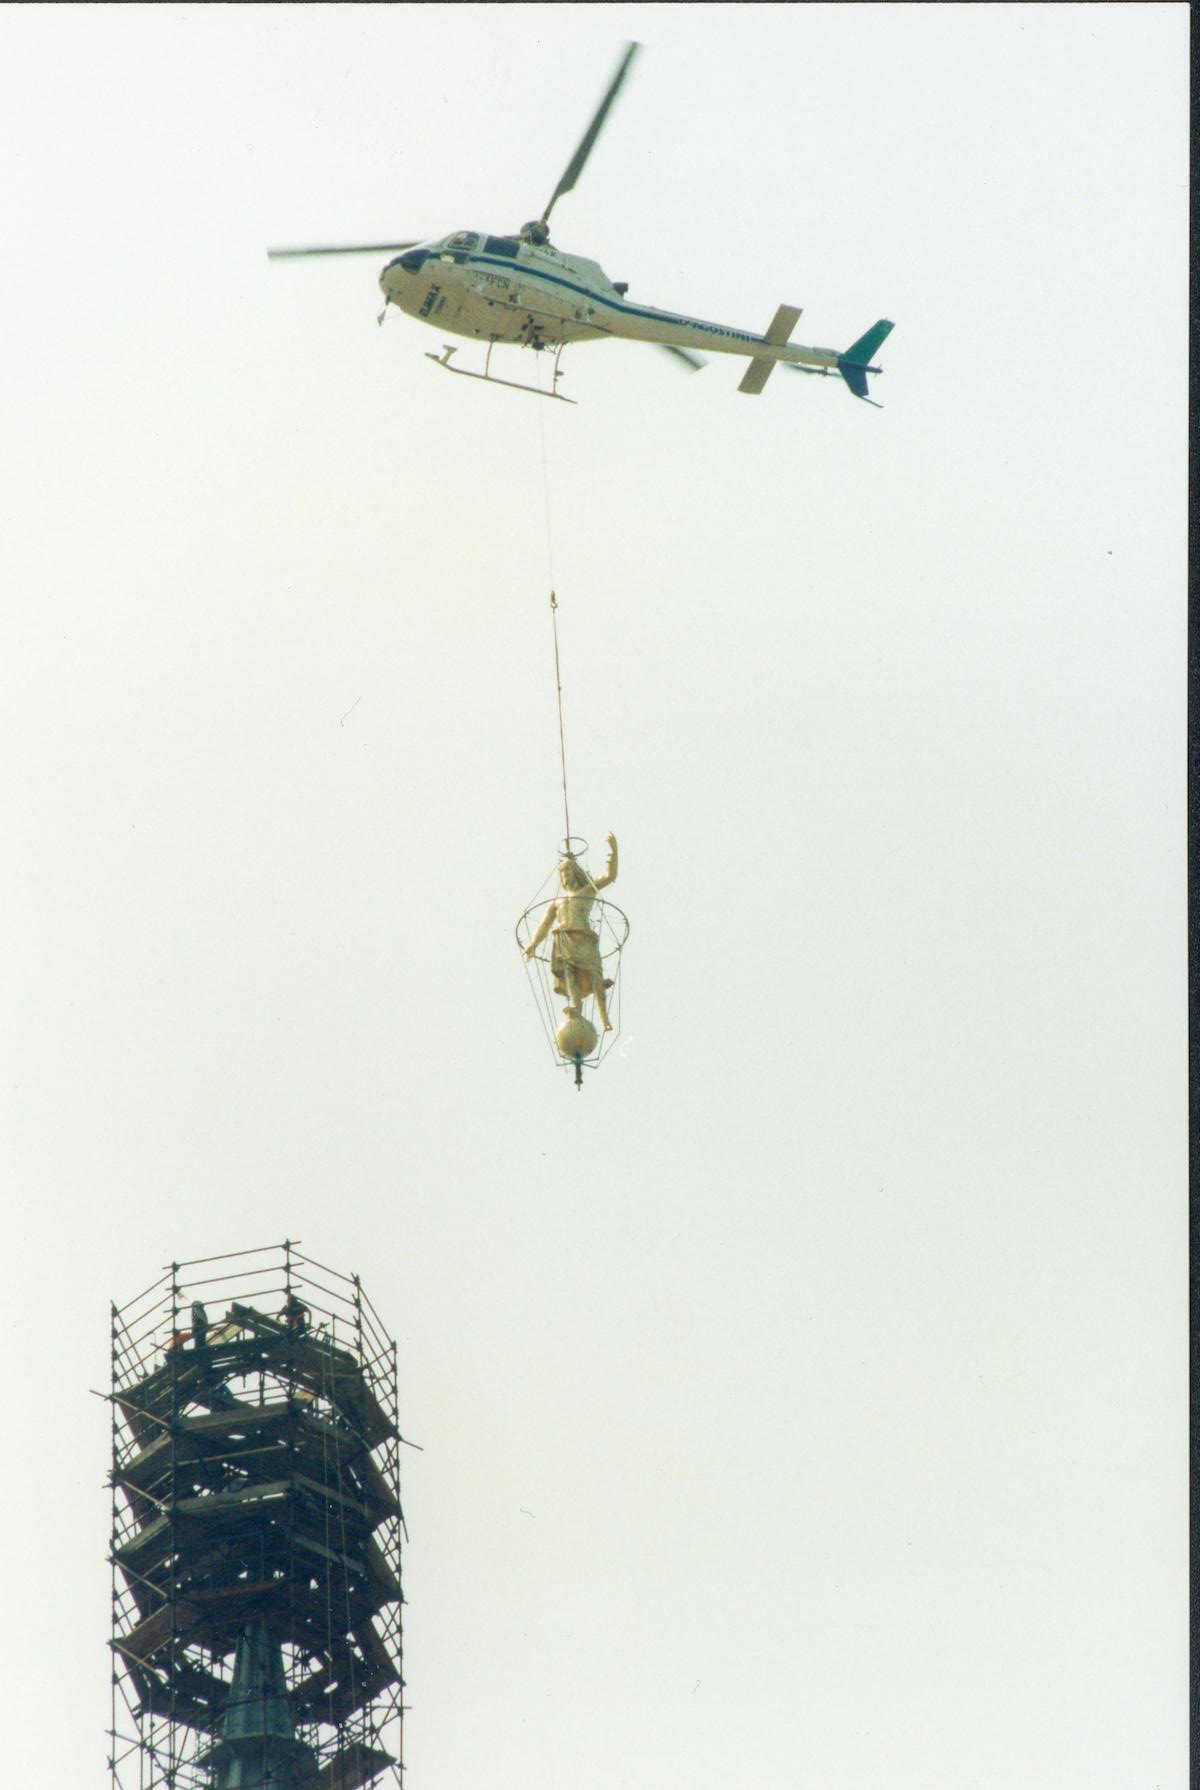 Posizionamento Statua del Salvatore sulla cupola di San Gaudenzio a Novara mediante elicottero